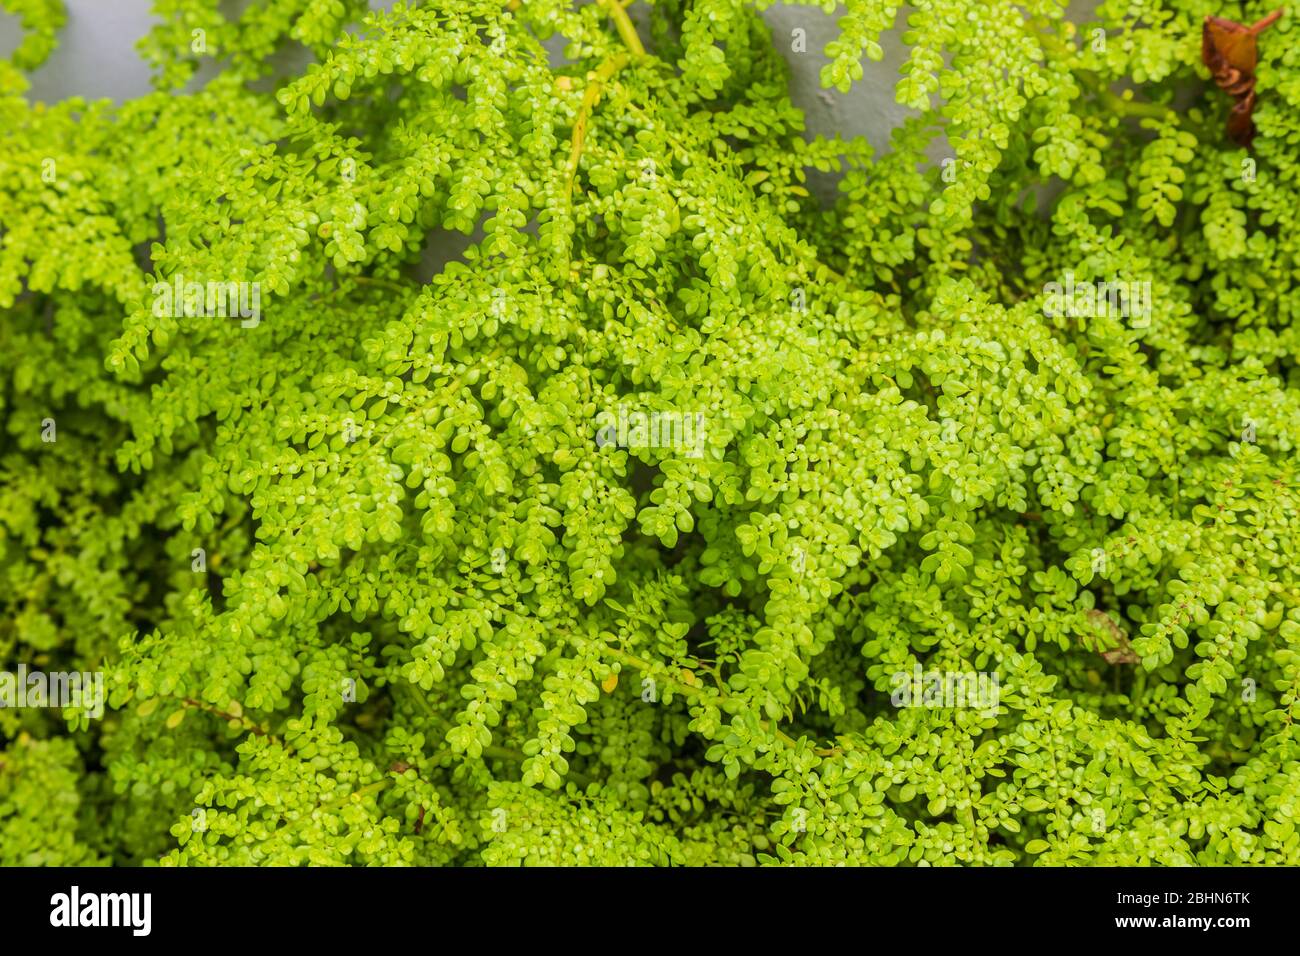 Foglie della pianta della giada (Crassula ovata), spesso chiamata la pianta fortunata, la pianta del denaro o l'albero del denaro. È una pianta succulenta con un piccolo rosa o bianco Foto Stock